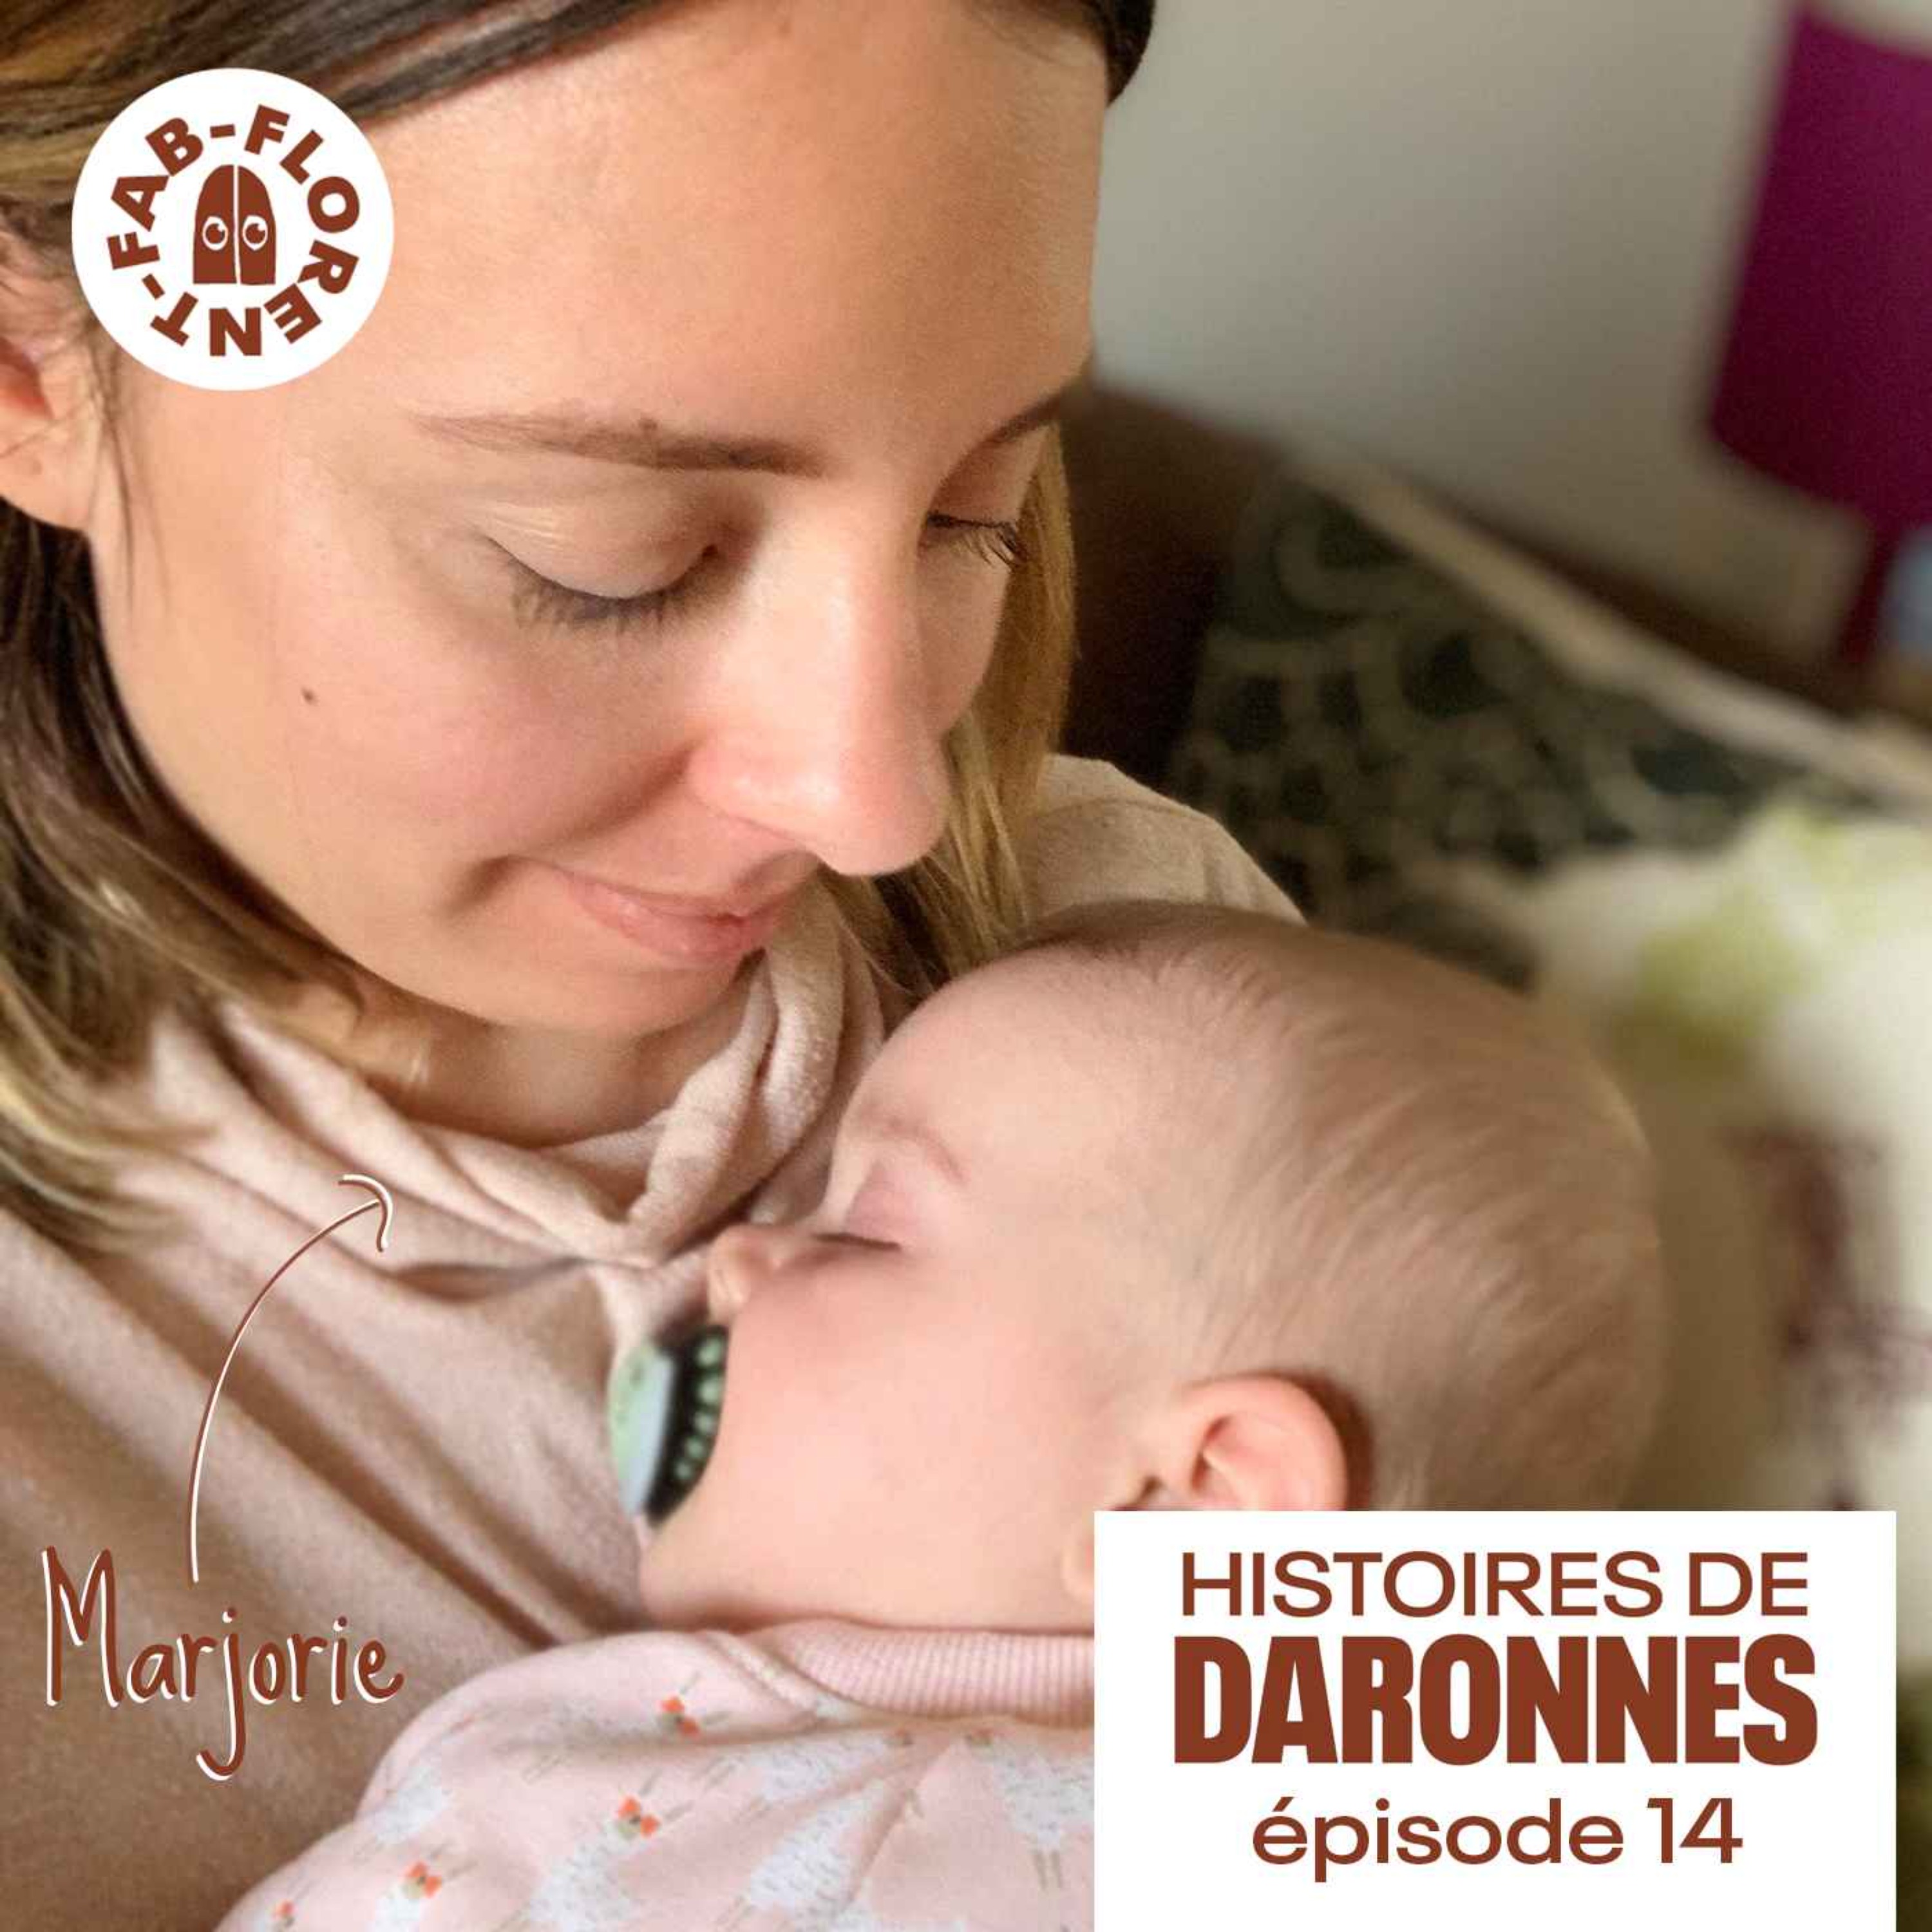 Daronnes #14 : Marjorie, 